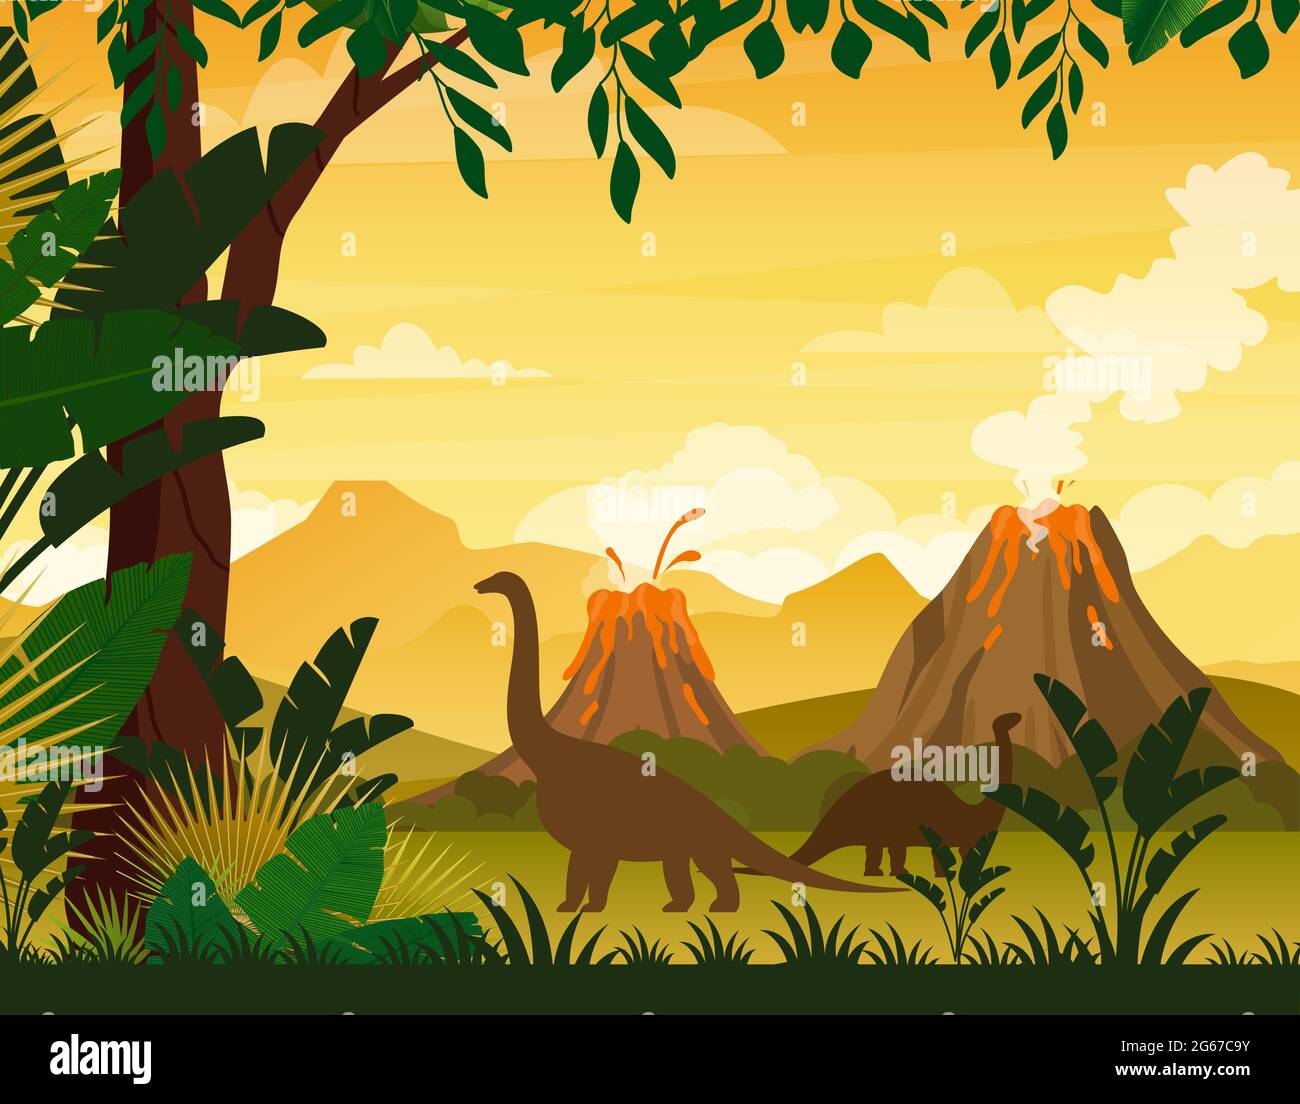 Vektor-Illustration von schönen prähistorischen Landschaft und Dinosaurier. Tropische Bäume und Pflanzen, Berge mit Vulkan im flachen Cartoon-Stil. Stock Vektor